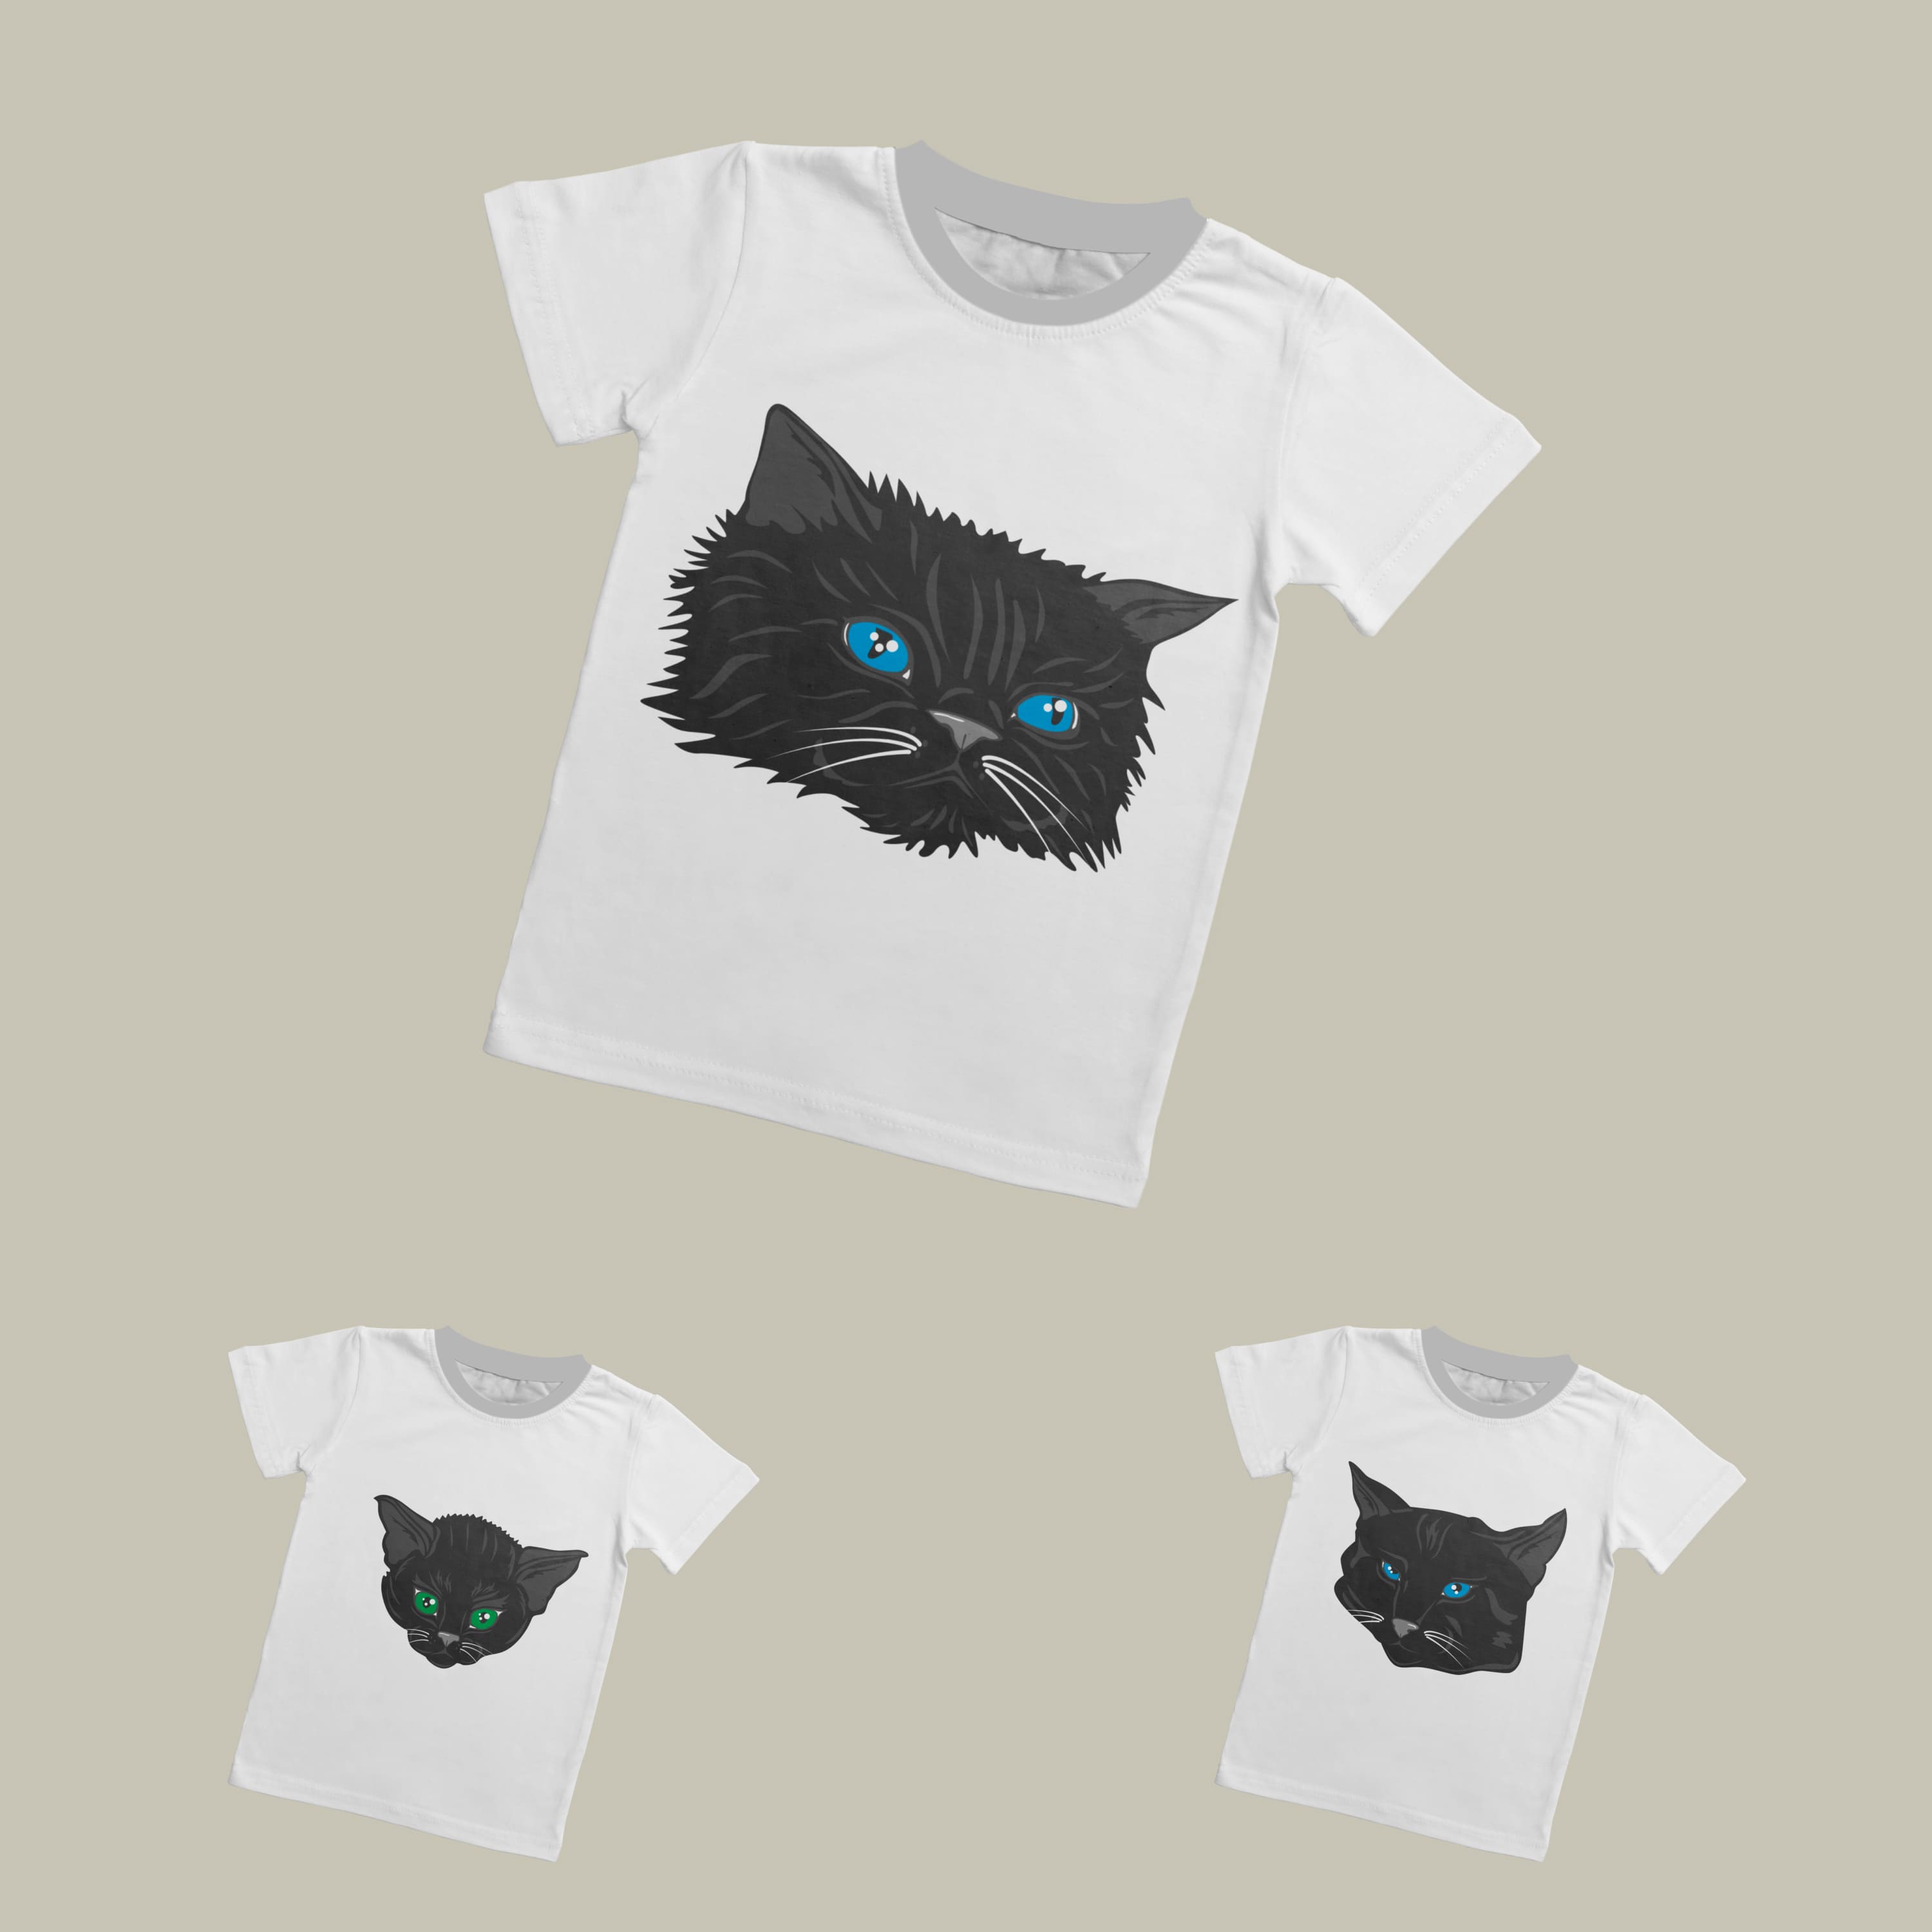 Black Cat Face T-shirt Designs Bundle Cover.